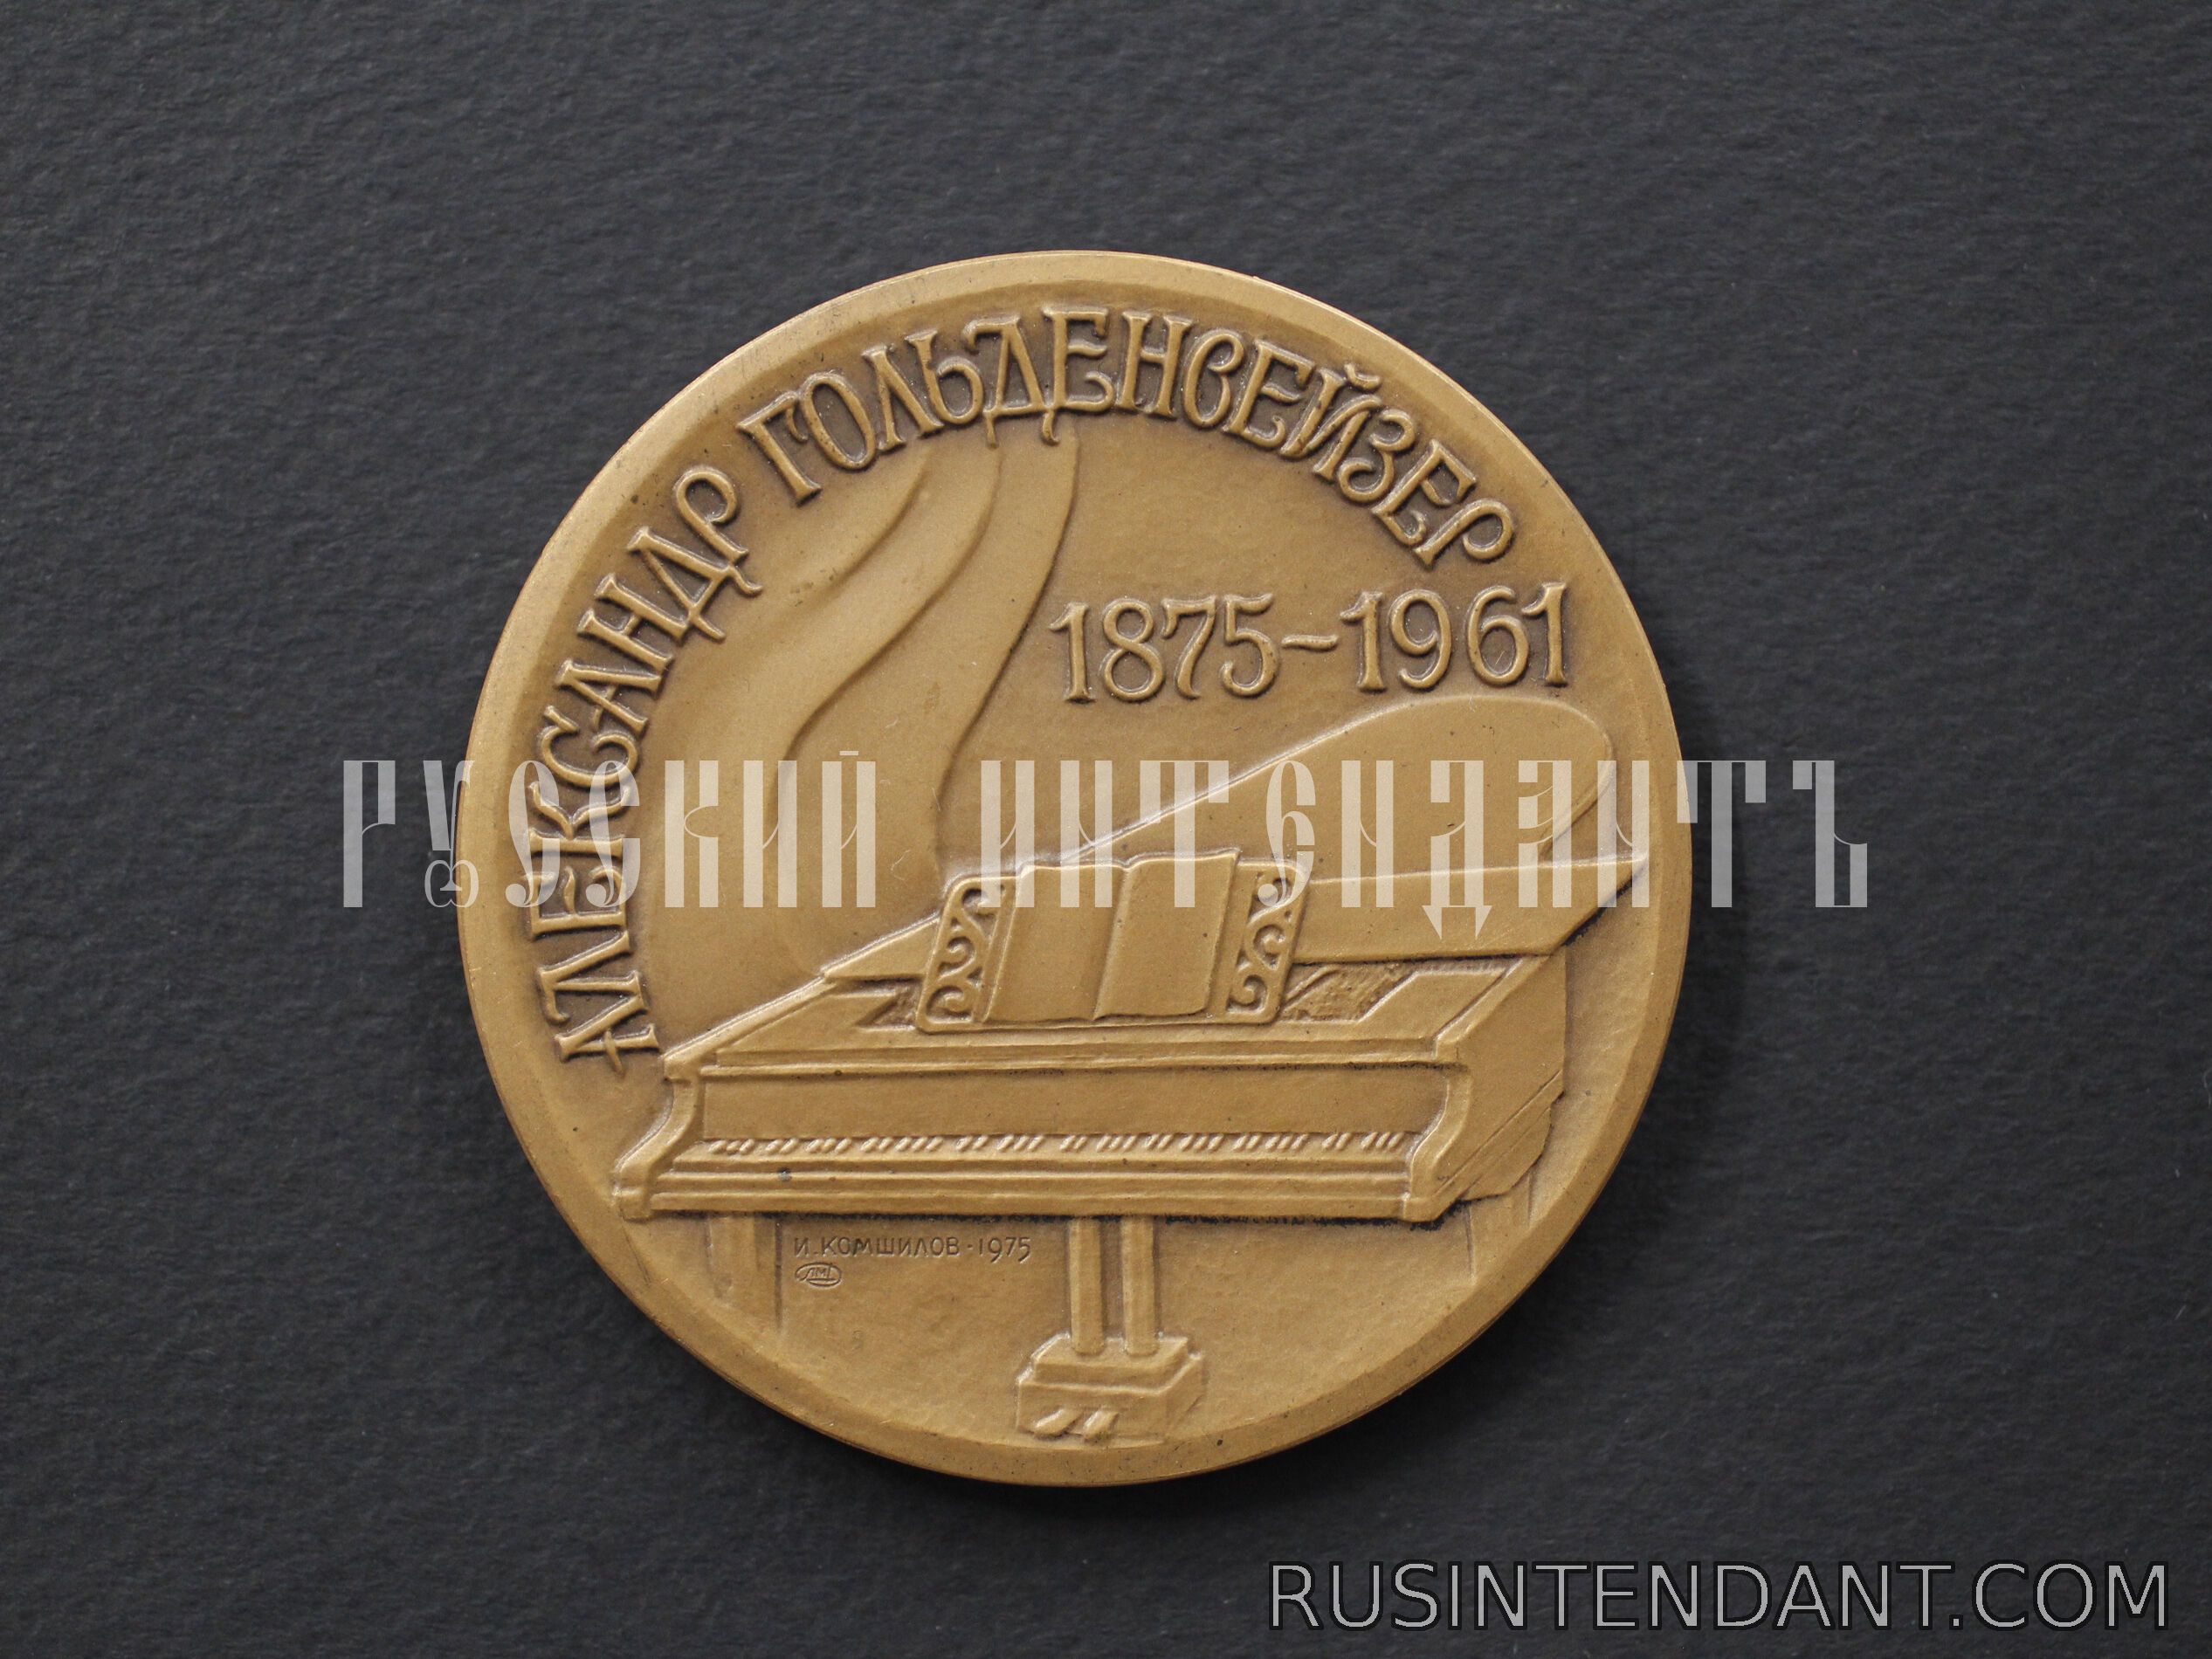 Фото 2: Настольная медаль «Александр Гольденвейзер» 